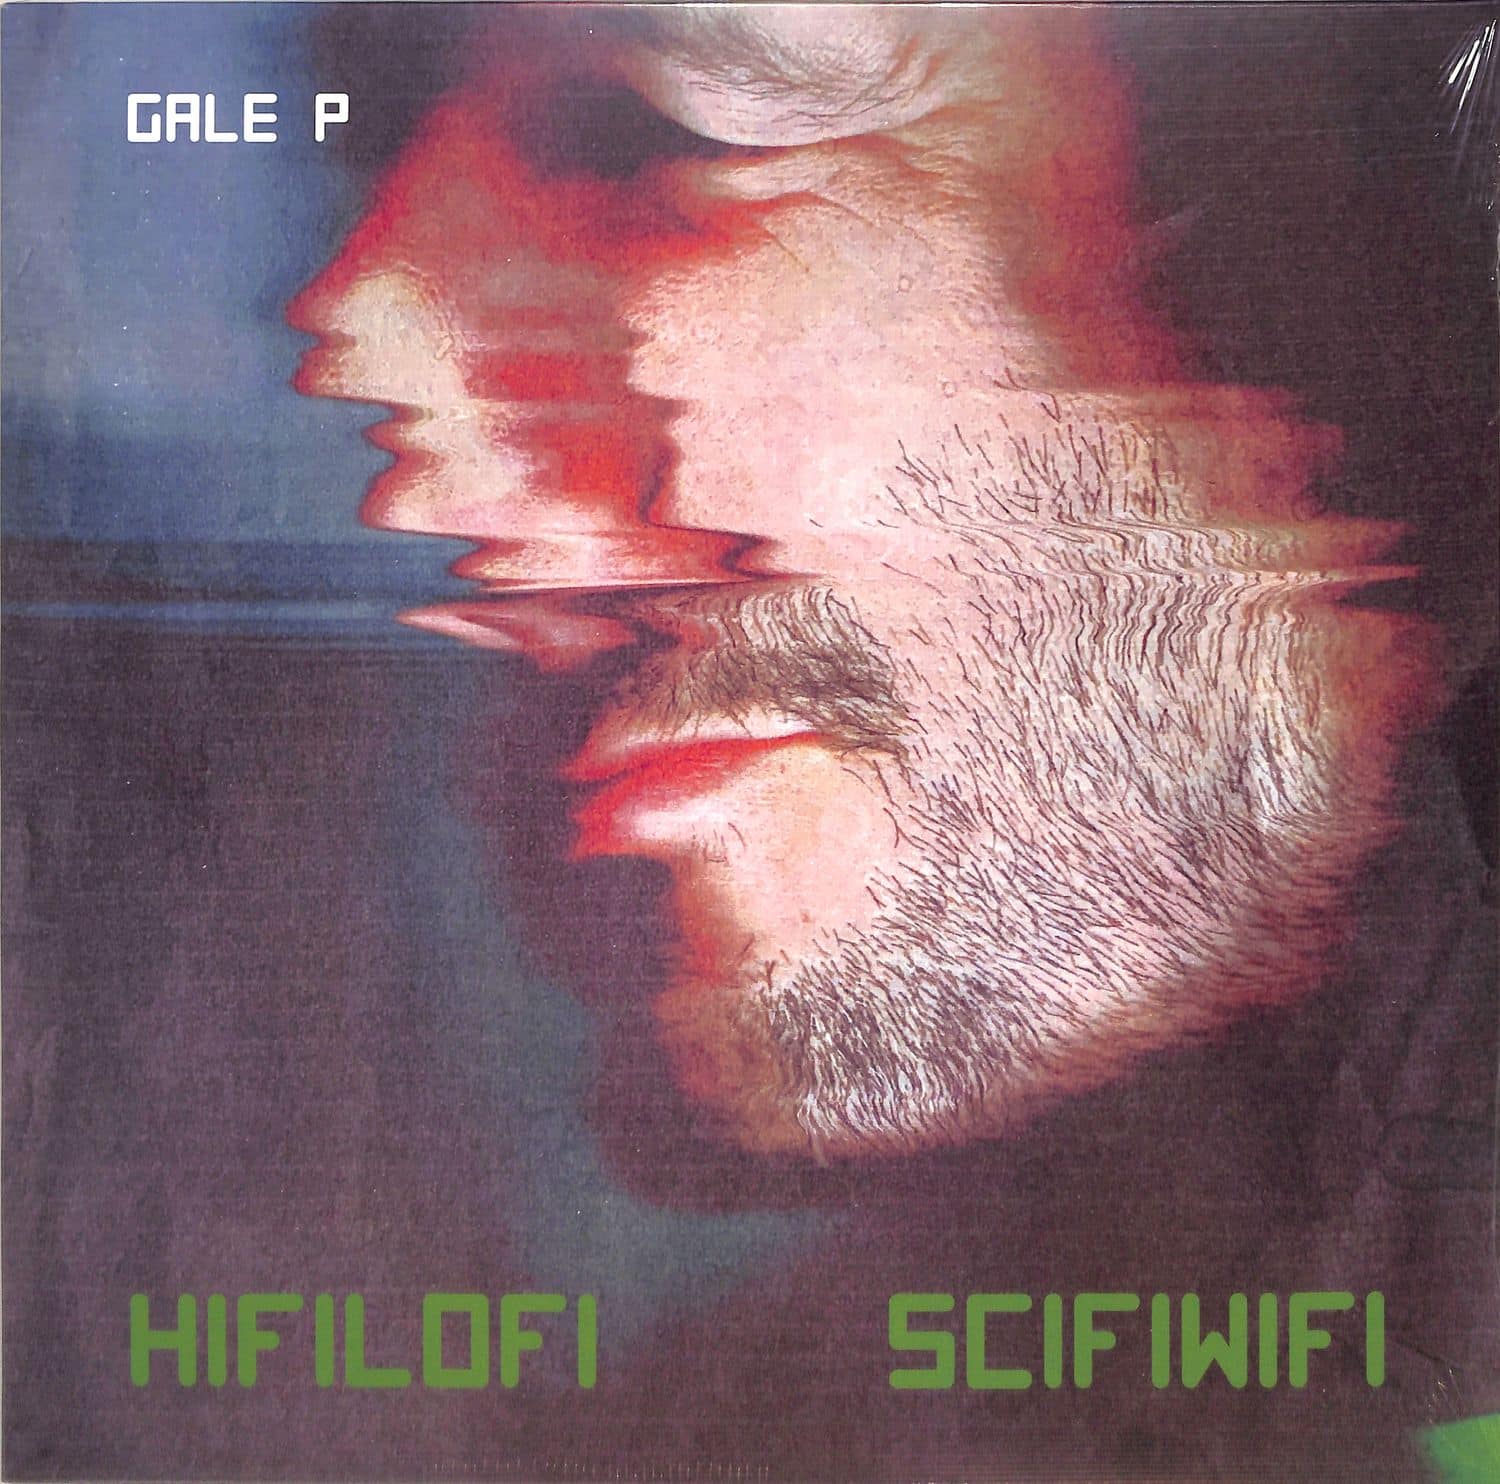 Gale P - HIFILOFI SCIFIWIFI 